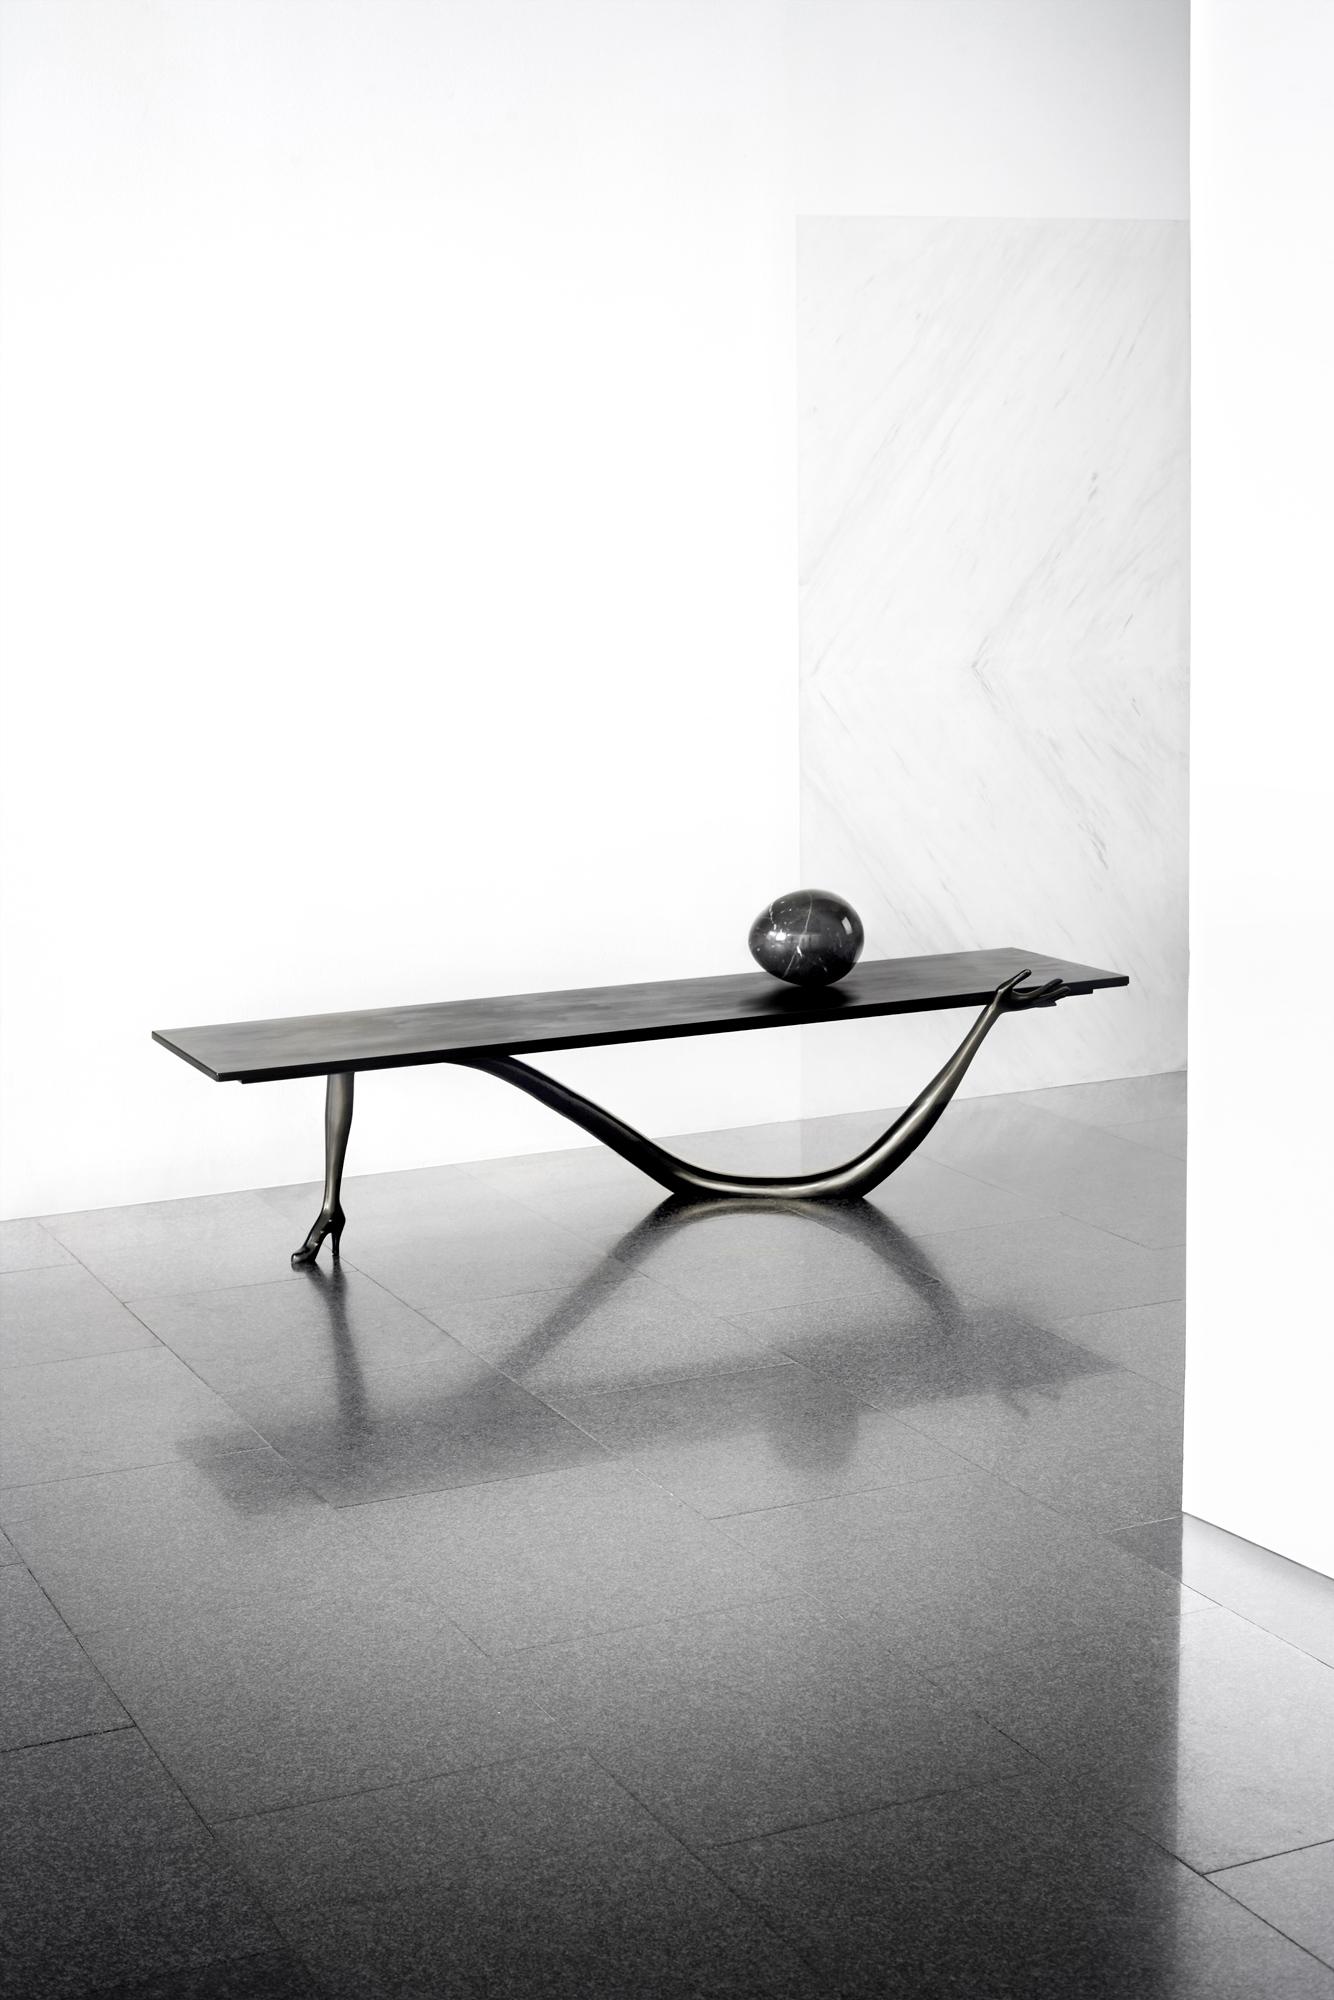 Verschönern Sie Ihren Raum mit dem seltenen und exquisiten Leda-Tisch von Salvador Dali, einem wahren Meisterwerk der Kunst und des Designs. Dieses vom surrealistischen Meister selbst entworfene und von BD gefertigte Black Label-Stück in limitierter